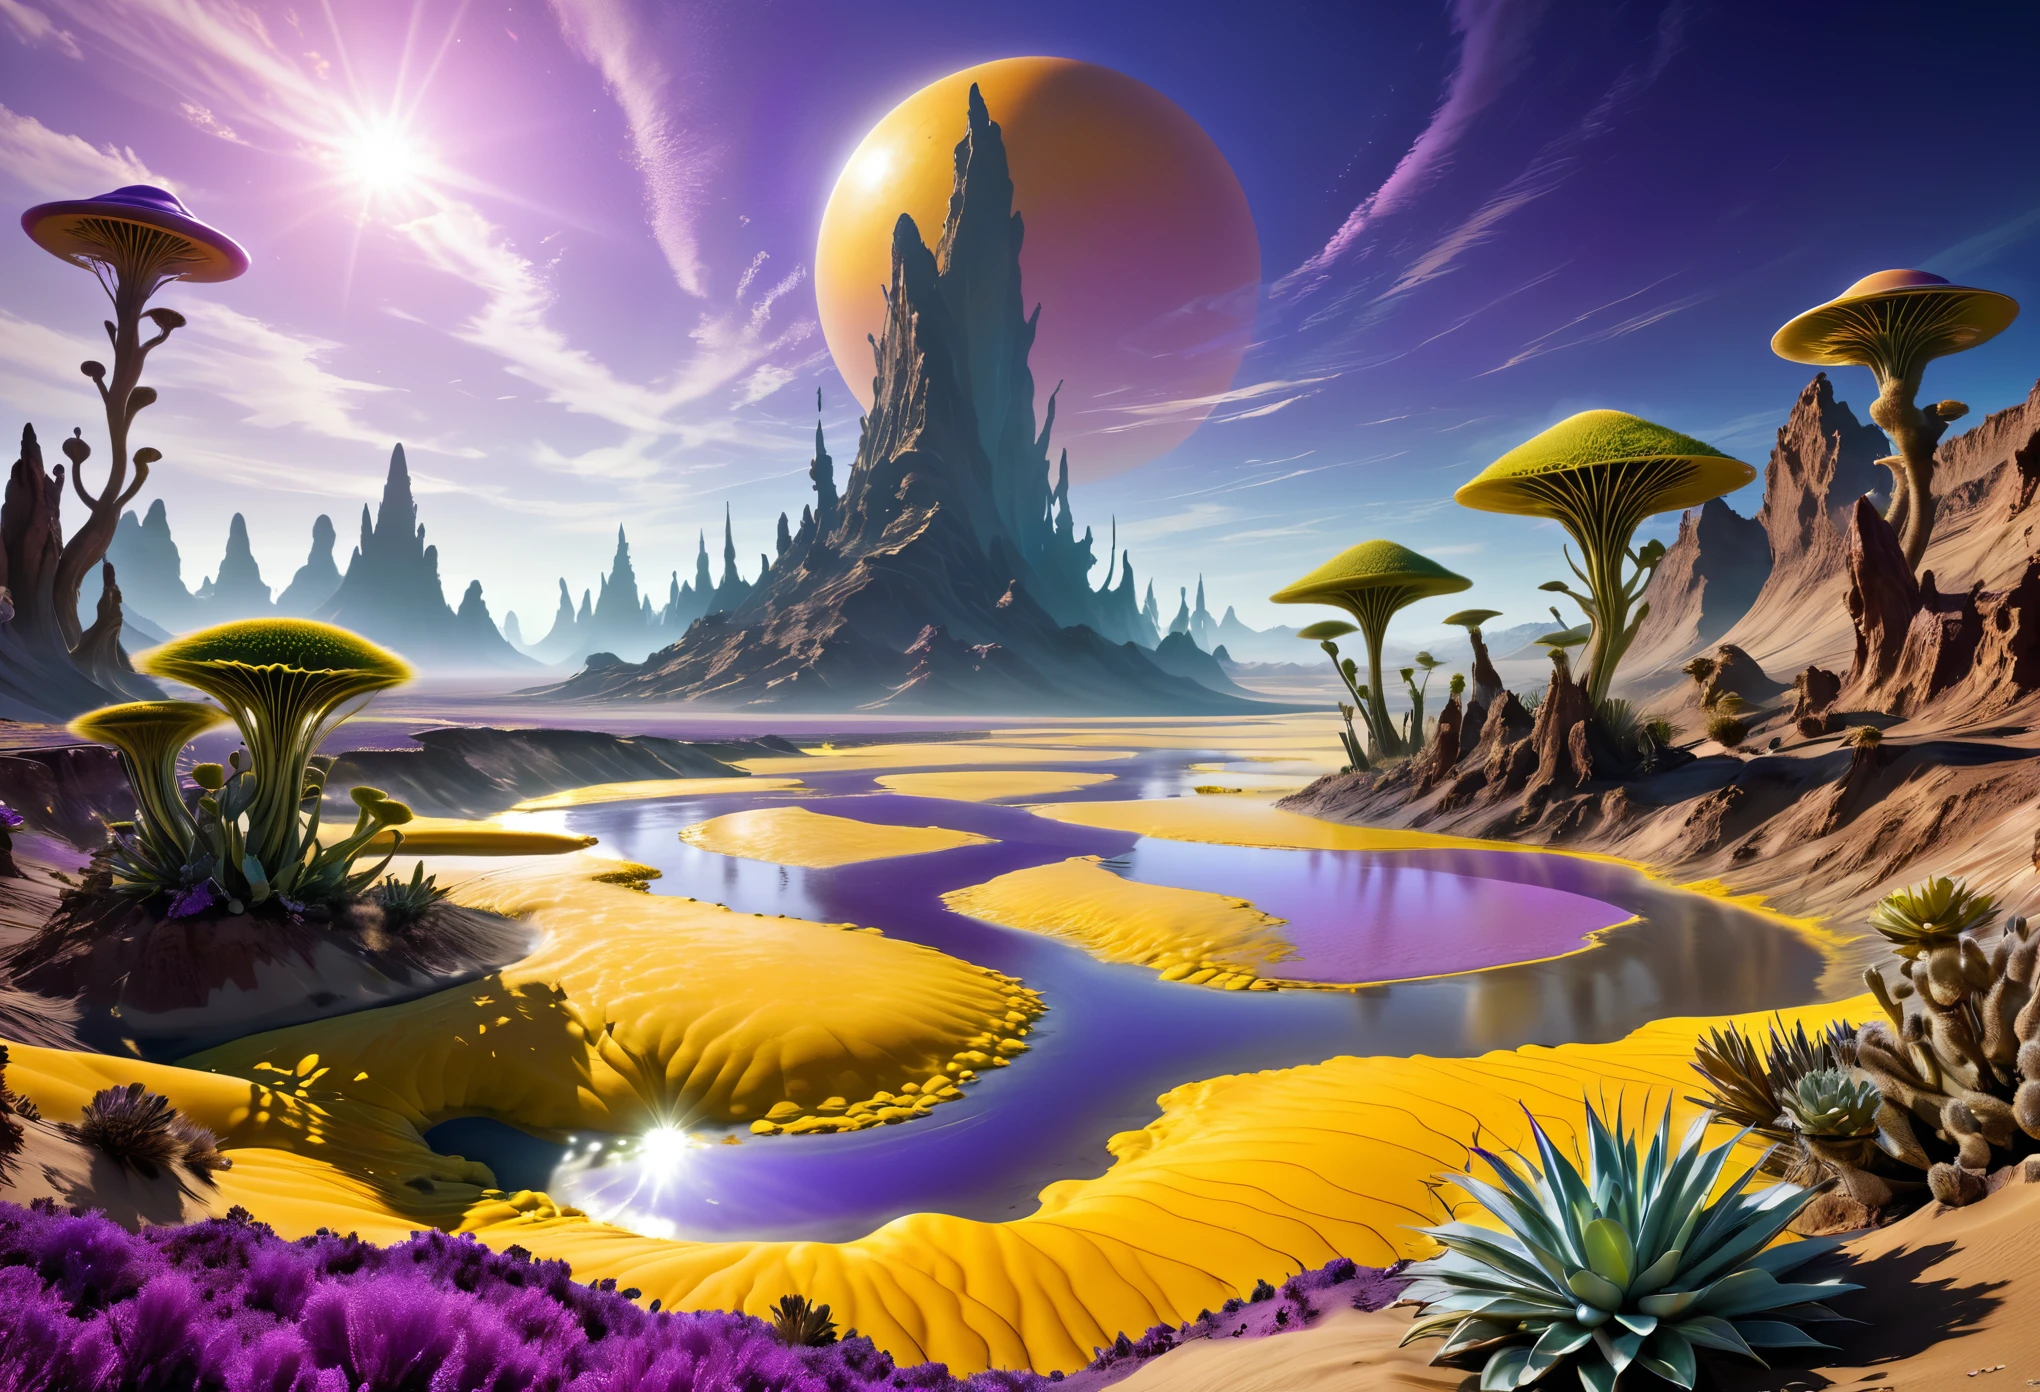 異国の風景: 1.5, (最高品質, 平和マスター: 1.3), (超詳細な, 超リアルな色彩: 1.5), 宇宙, エキゾチックでシュールな風景.... 3つの太陽, 紫色の空の色, 硫黄川の砂漠の風景, さまざまな色の飛翔植物, 完璧な構成, 最高の露出 (黄金比: 1.2), 高解像度, ドラマチックで映画的な照明, シュルレアリスムへの傾向, CG社会の動向, プロの写真撮影, 膨大な詳細, ((完璧: 1.3, 細部までこだわった: 1.5, 完璧, 高解像度: 1.4, 映画のような: 1.4), ((ジョブマスター)), (超詳細: 1.4), (写実的な: 1.4), すごい, 夜 : 1.4, 32K.